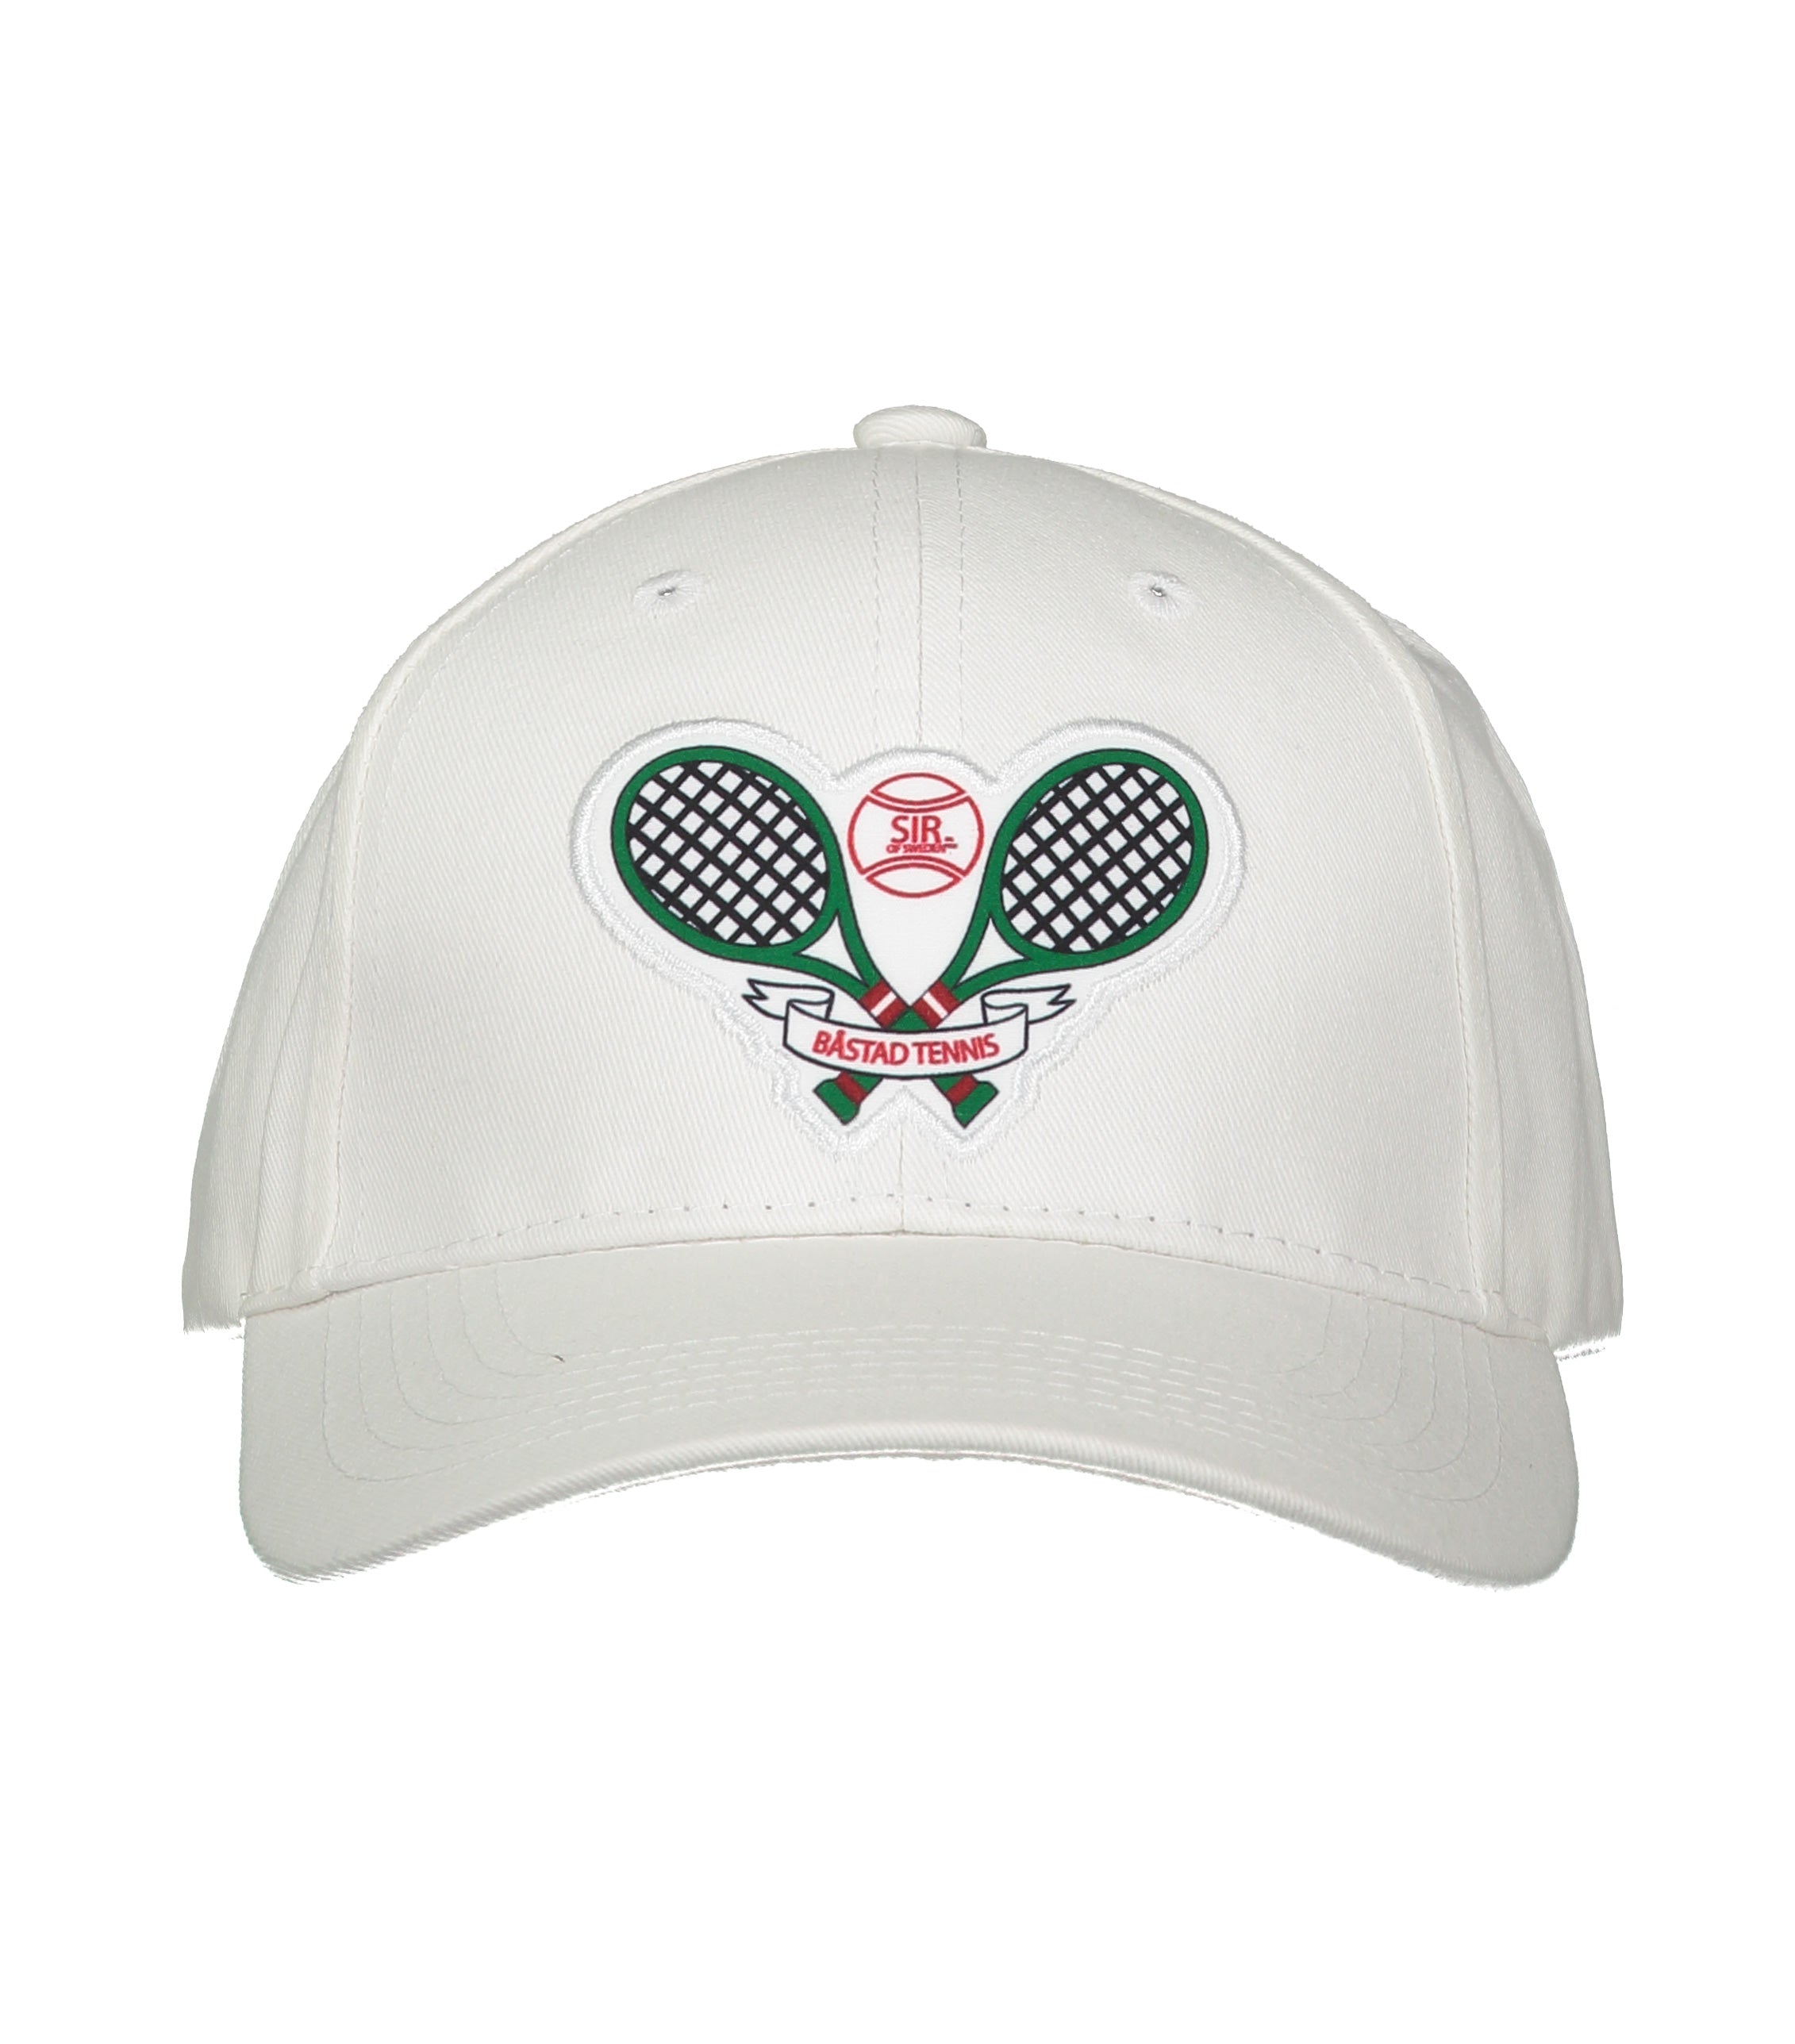 A-Rod White Tennis Cap